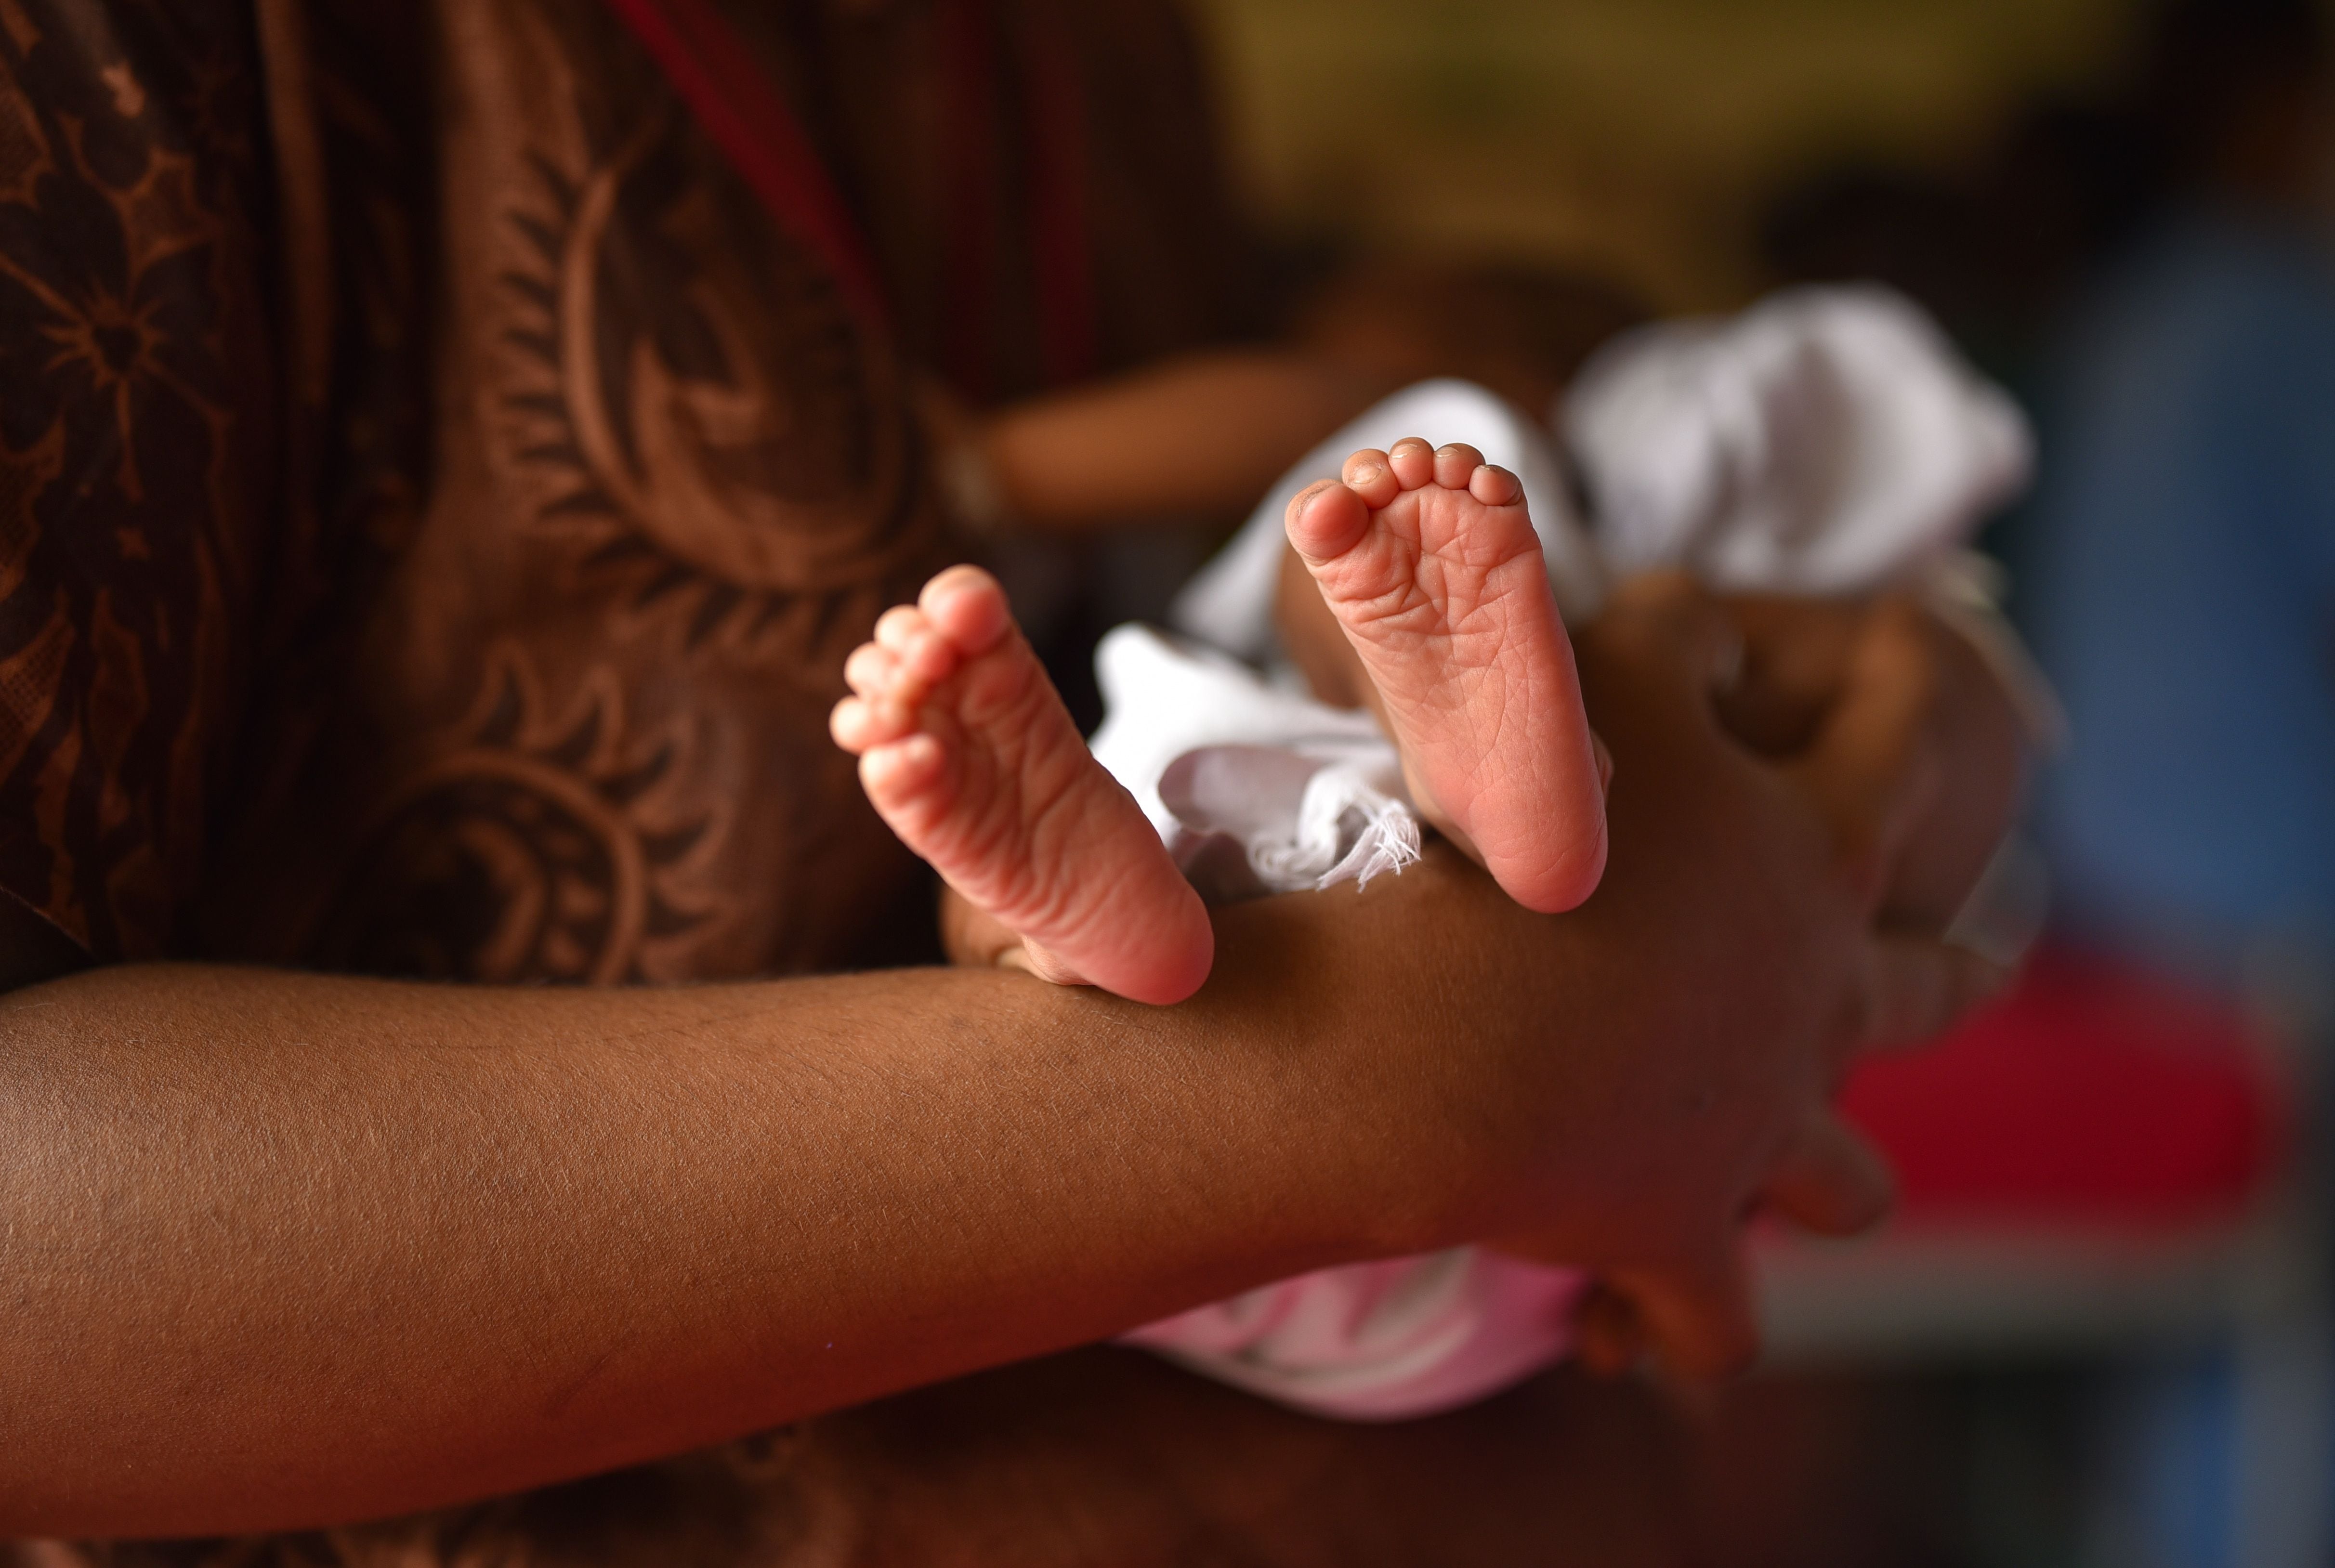 “Cuando las familias recibieron apoyo y tuvieron participación en la toma de decisiones sobre el nacimiento, informaron una experiencia más positiva, con niveles reducidos de ansiedad y estrés”, dijo Aydin (EFE/EPA/IDREES MOHAMMED/Archivo)
